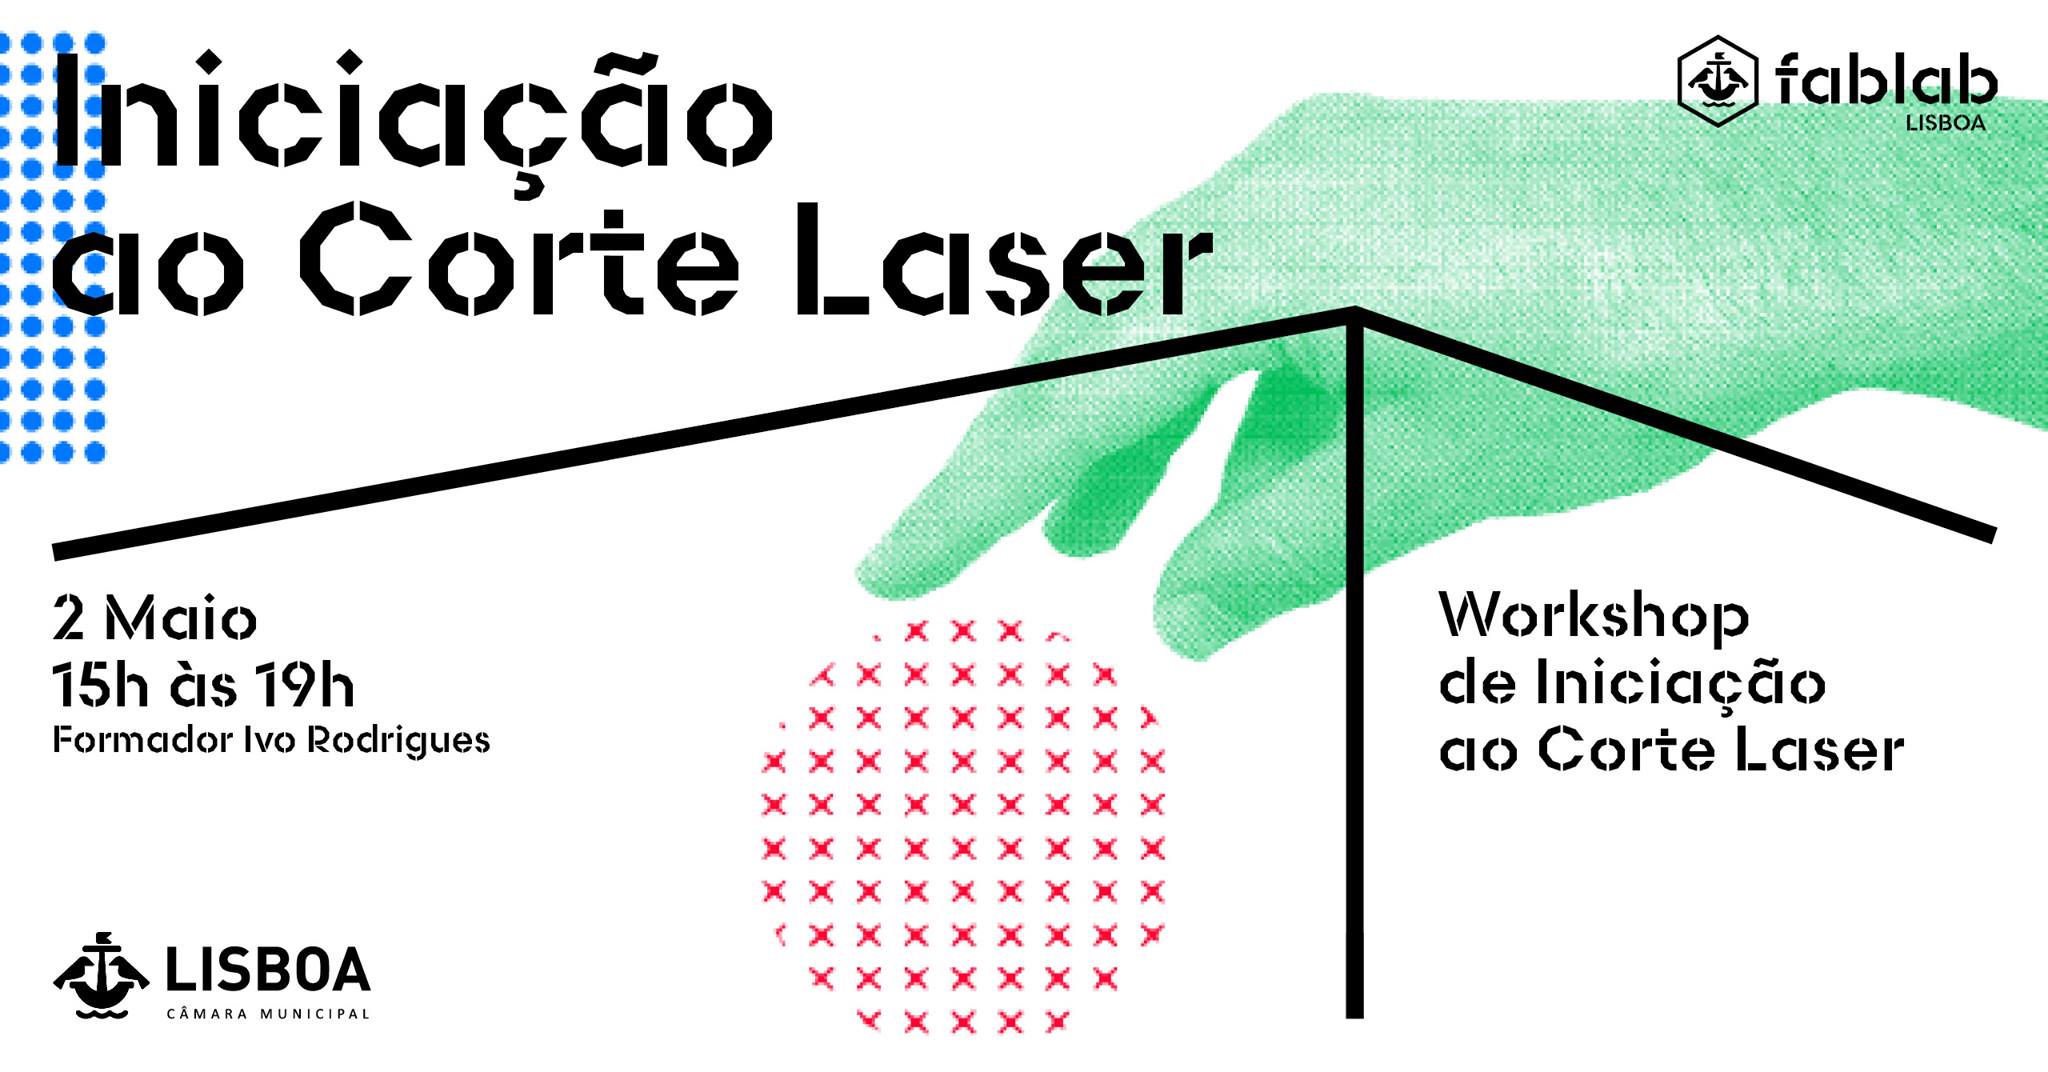 Iniciação ao Corte Laser